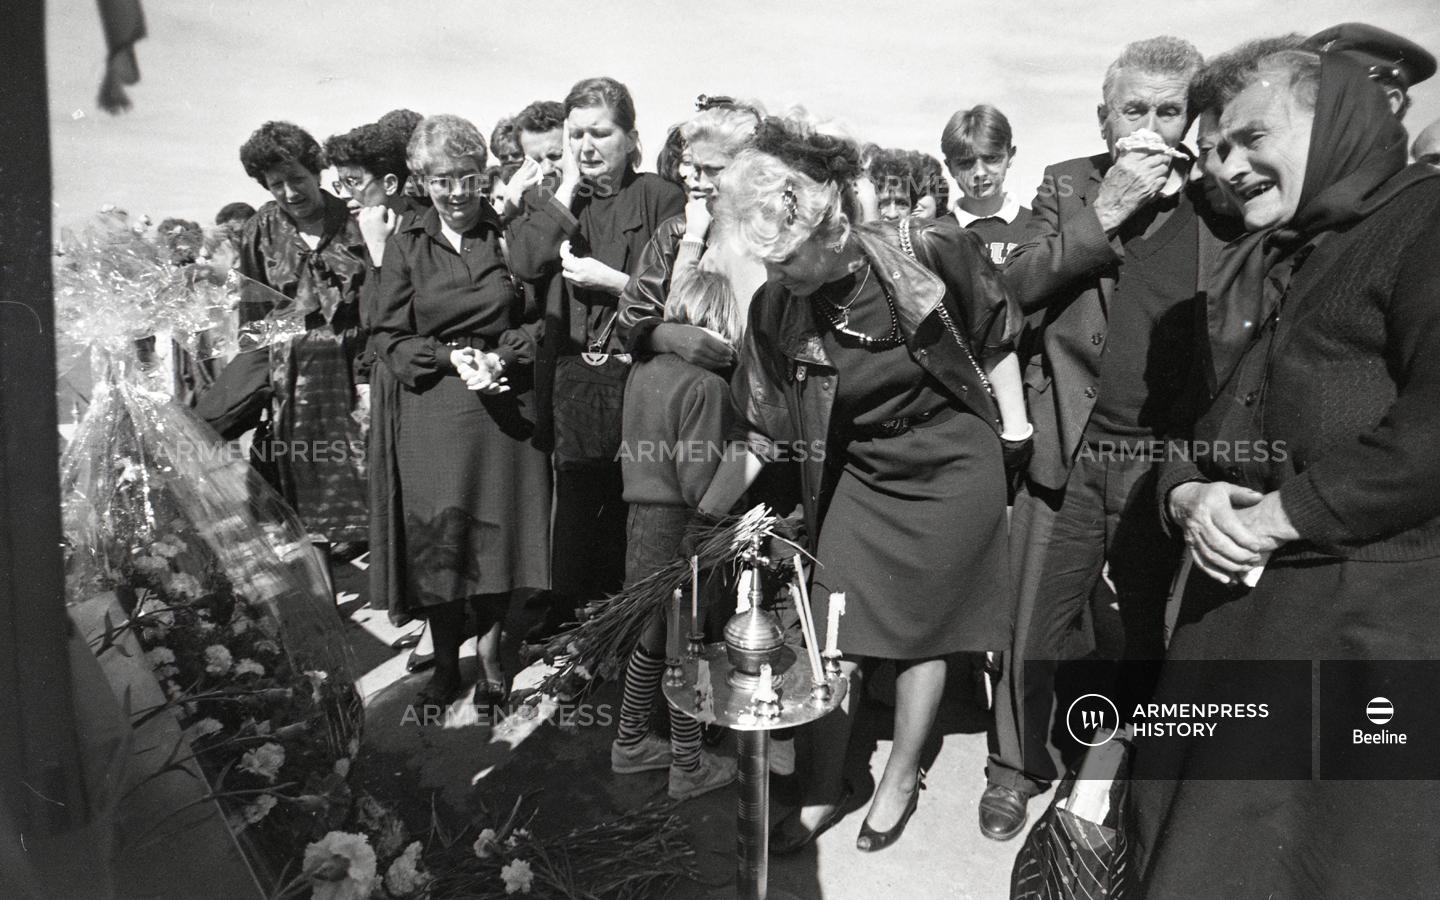 Կործանված հարավսլավական ինքնաթիռի անձնակազմի հարազատները  նրանց հիշատակին կանգնեցված հուշարձանի մոտ